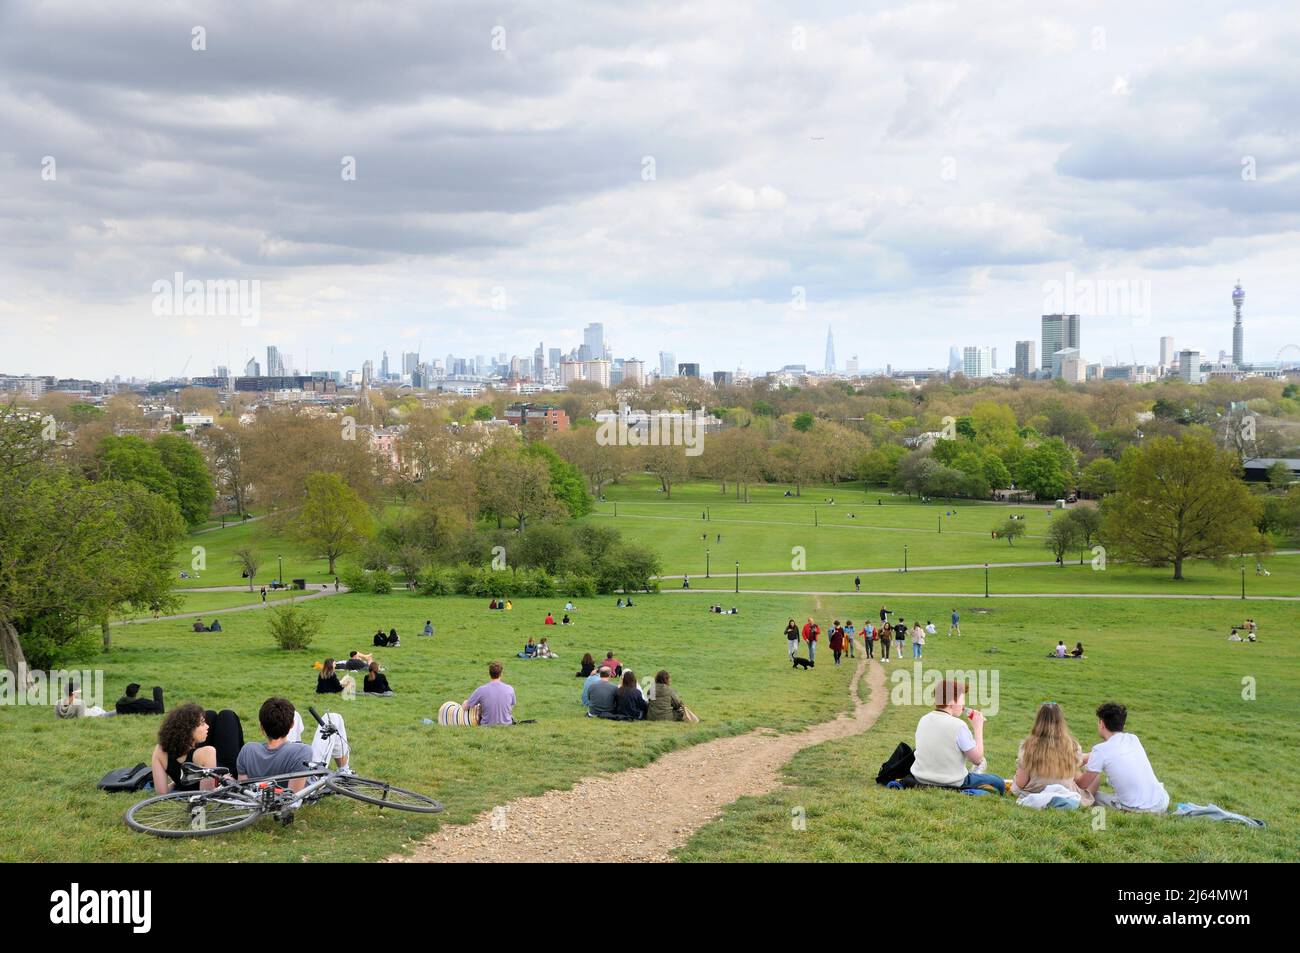 Persone che si rilassano sulle pendici erbose del parco Primrose Hill con vedute ininterrotte dei famosi edifici sullo skyline di Londra, North London England UK Foto Stock